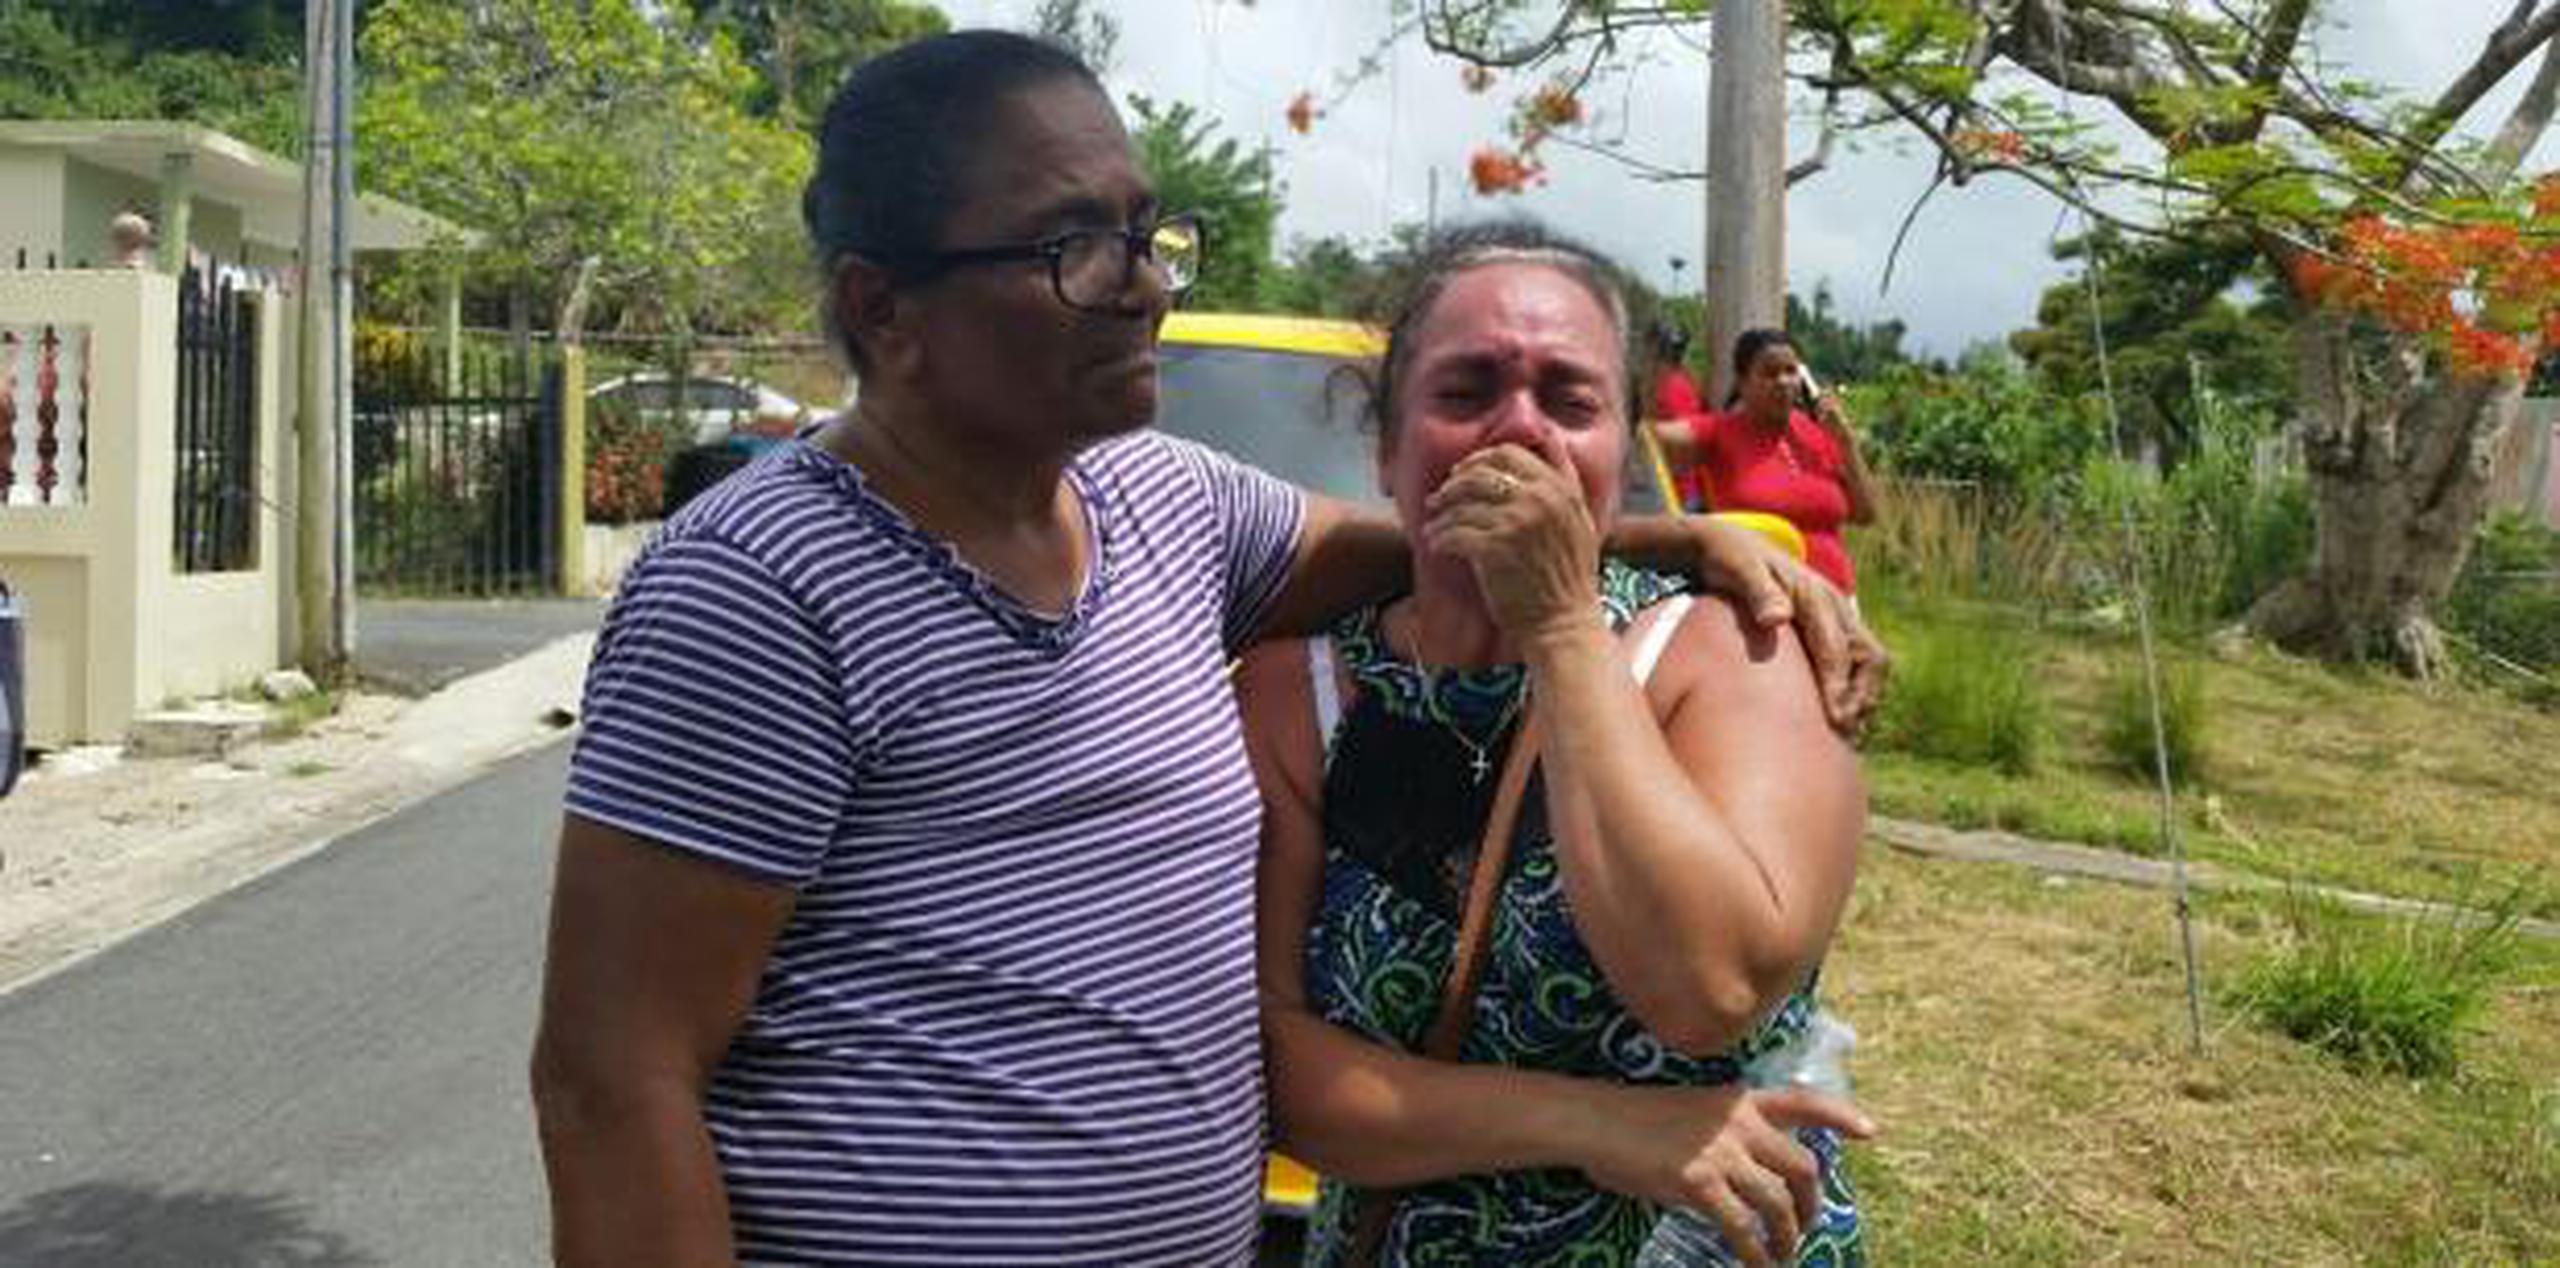 Marisol García Cuevas, abuela materna del menor de los niños, llora desconsolada.